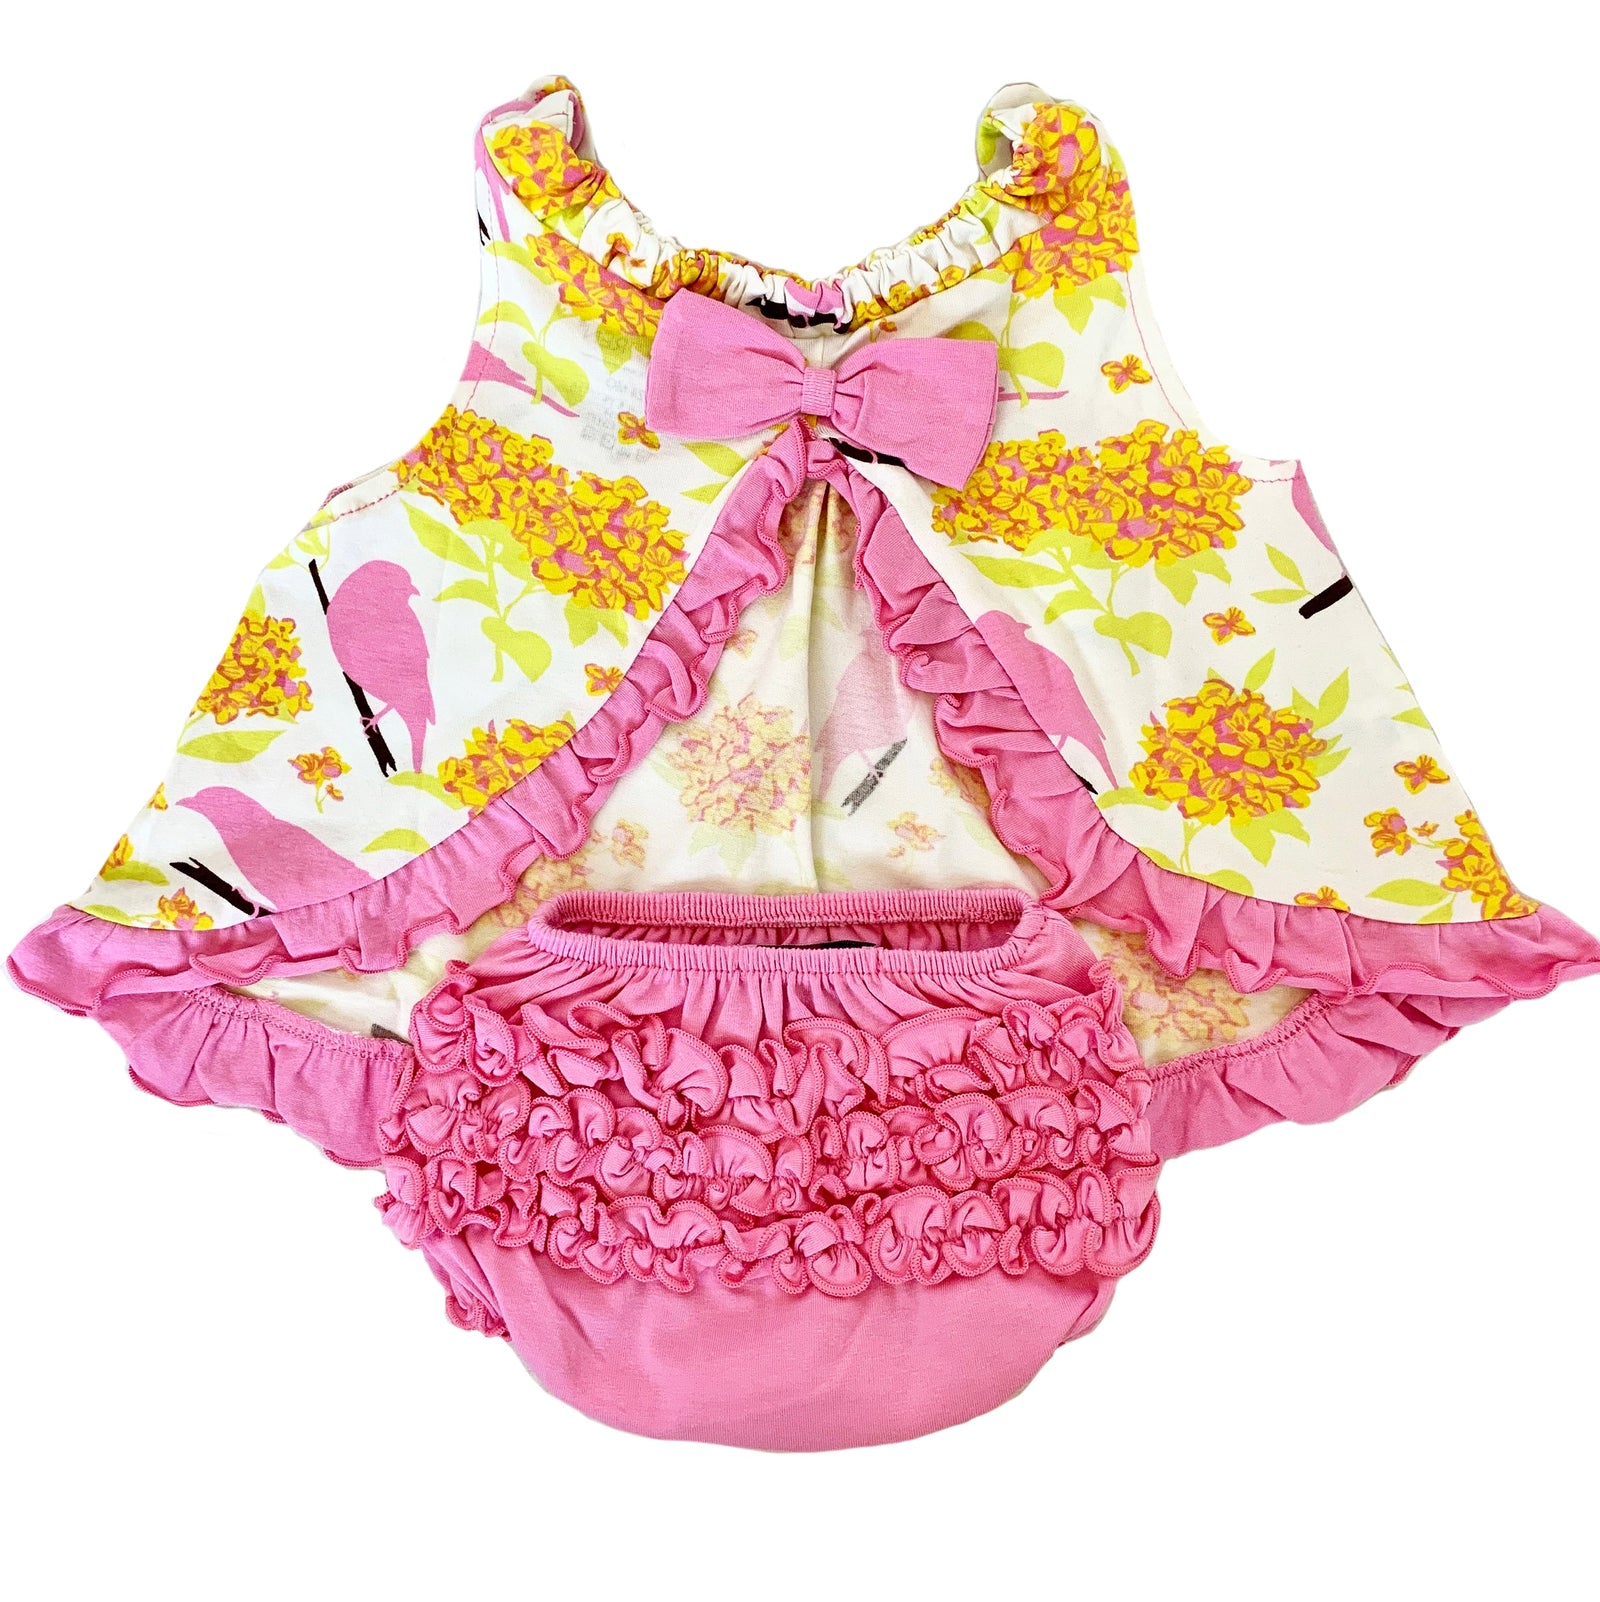 AnnLoren Baby & Toddler Girls Pink Knit Ruffled Butt Bloomer Diaper Cover (3-24 Mo)